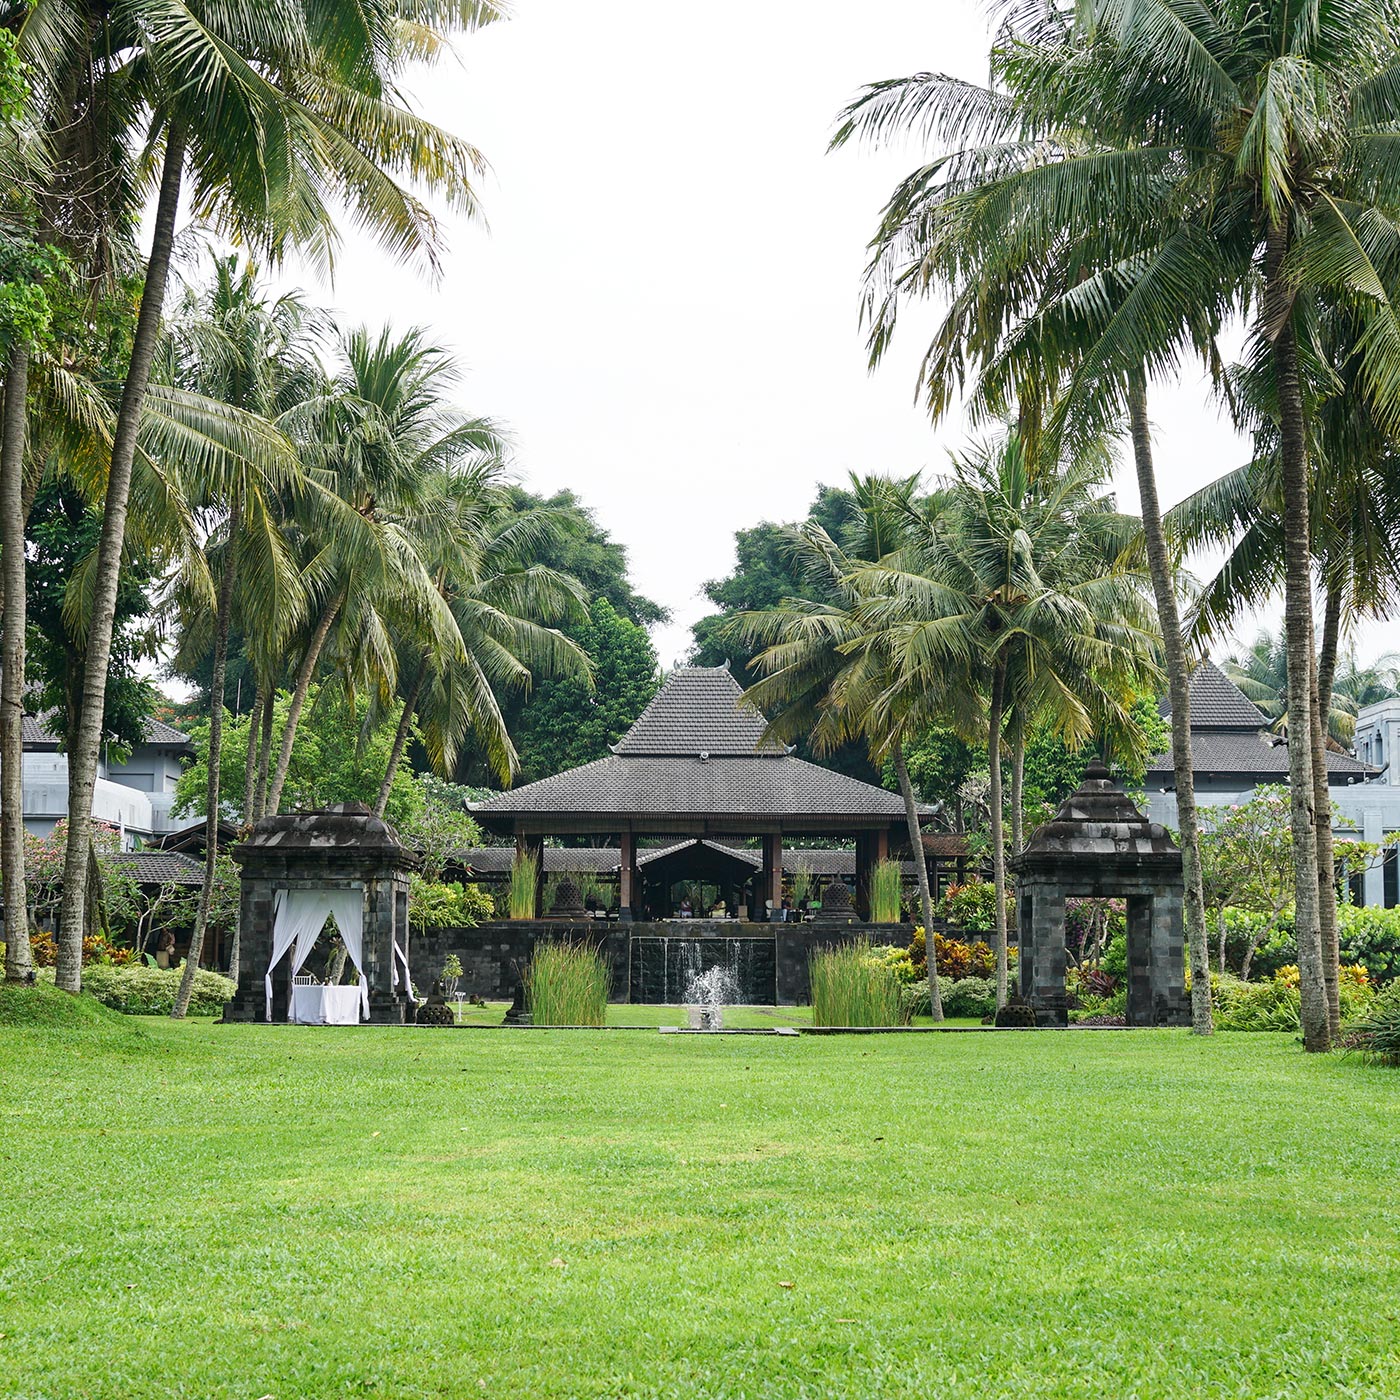 ロビーコートを庭から眺めると「メール山」を表現した「ジョグロ」と呼ばれるジャワの伝統建築であることがわかる。